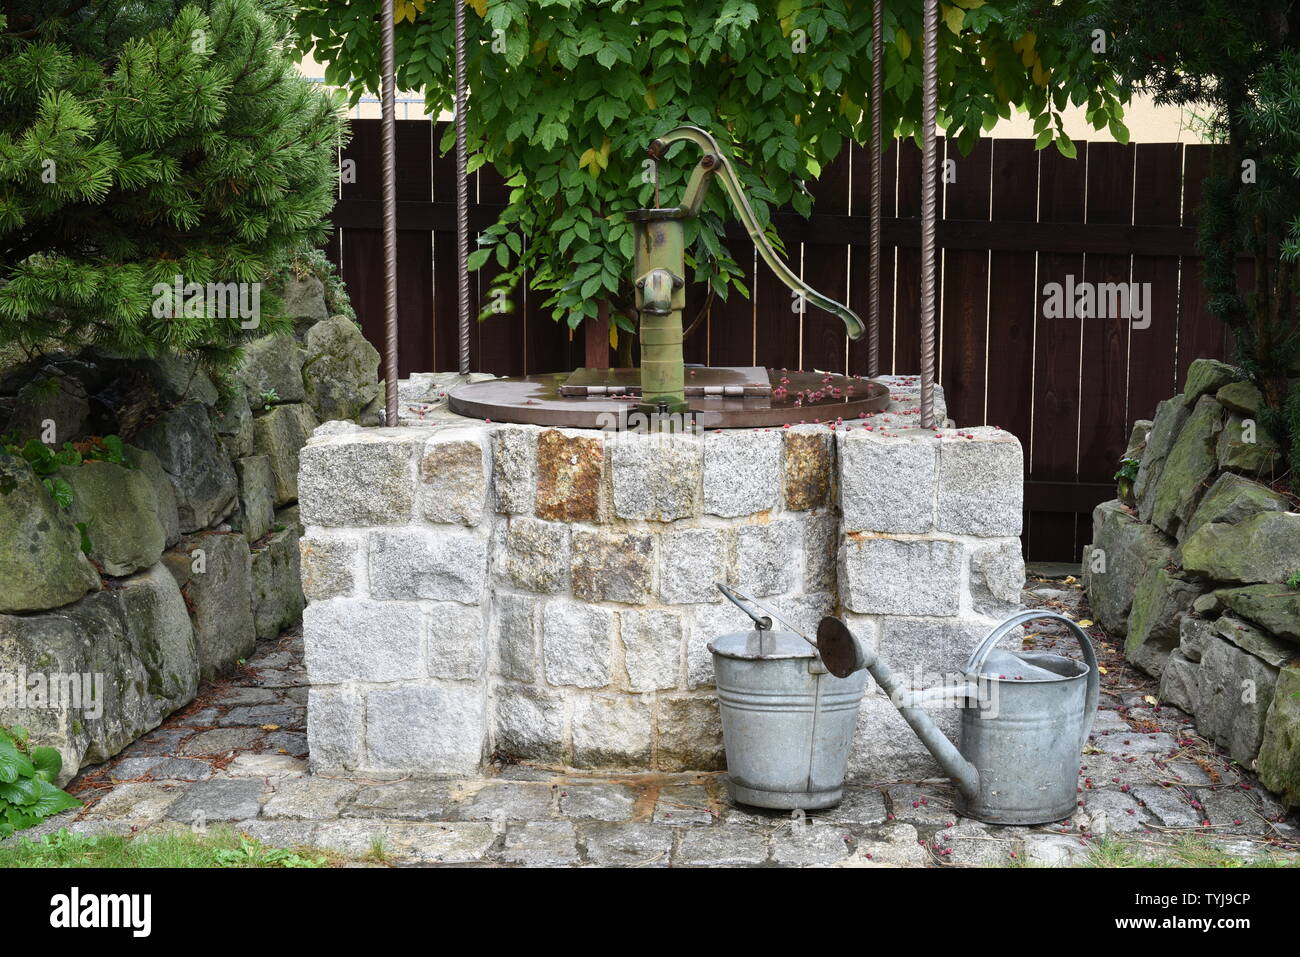 Alte Handwasserpumpe im Garten. Gusseisenwasserpumpe im Vintage-Stil  Stockfotografie - Alamy